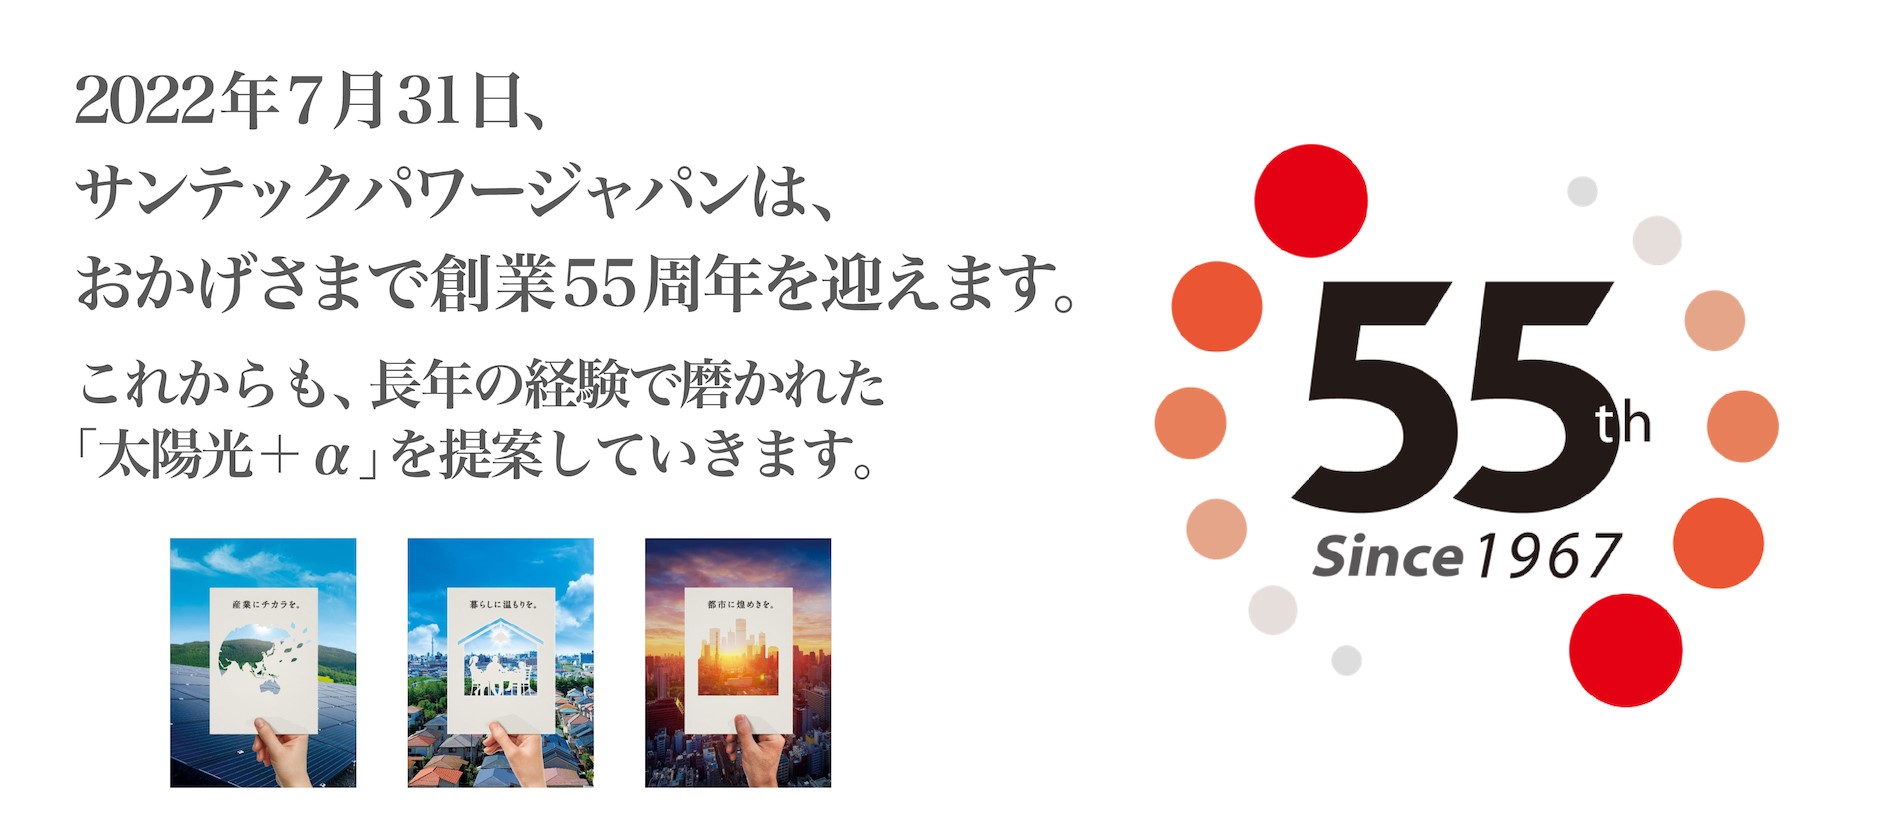 2022年7月31日、サンテックパワージャパンは、おかげさまで創業55周年を迎えます。